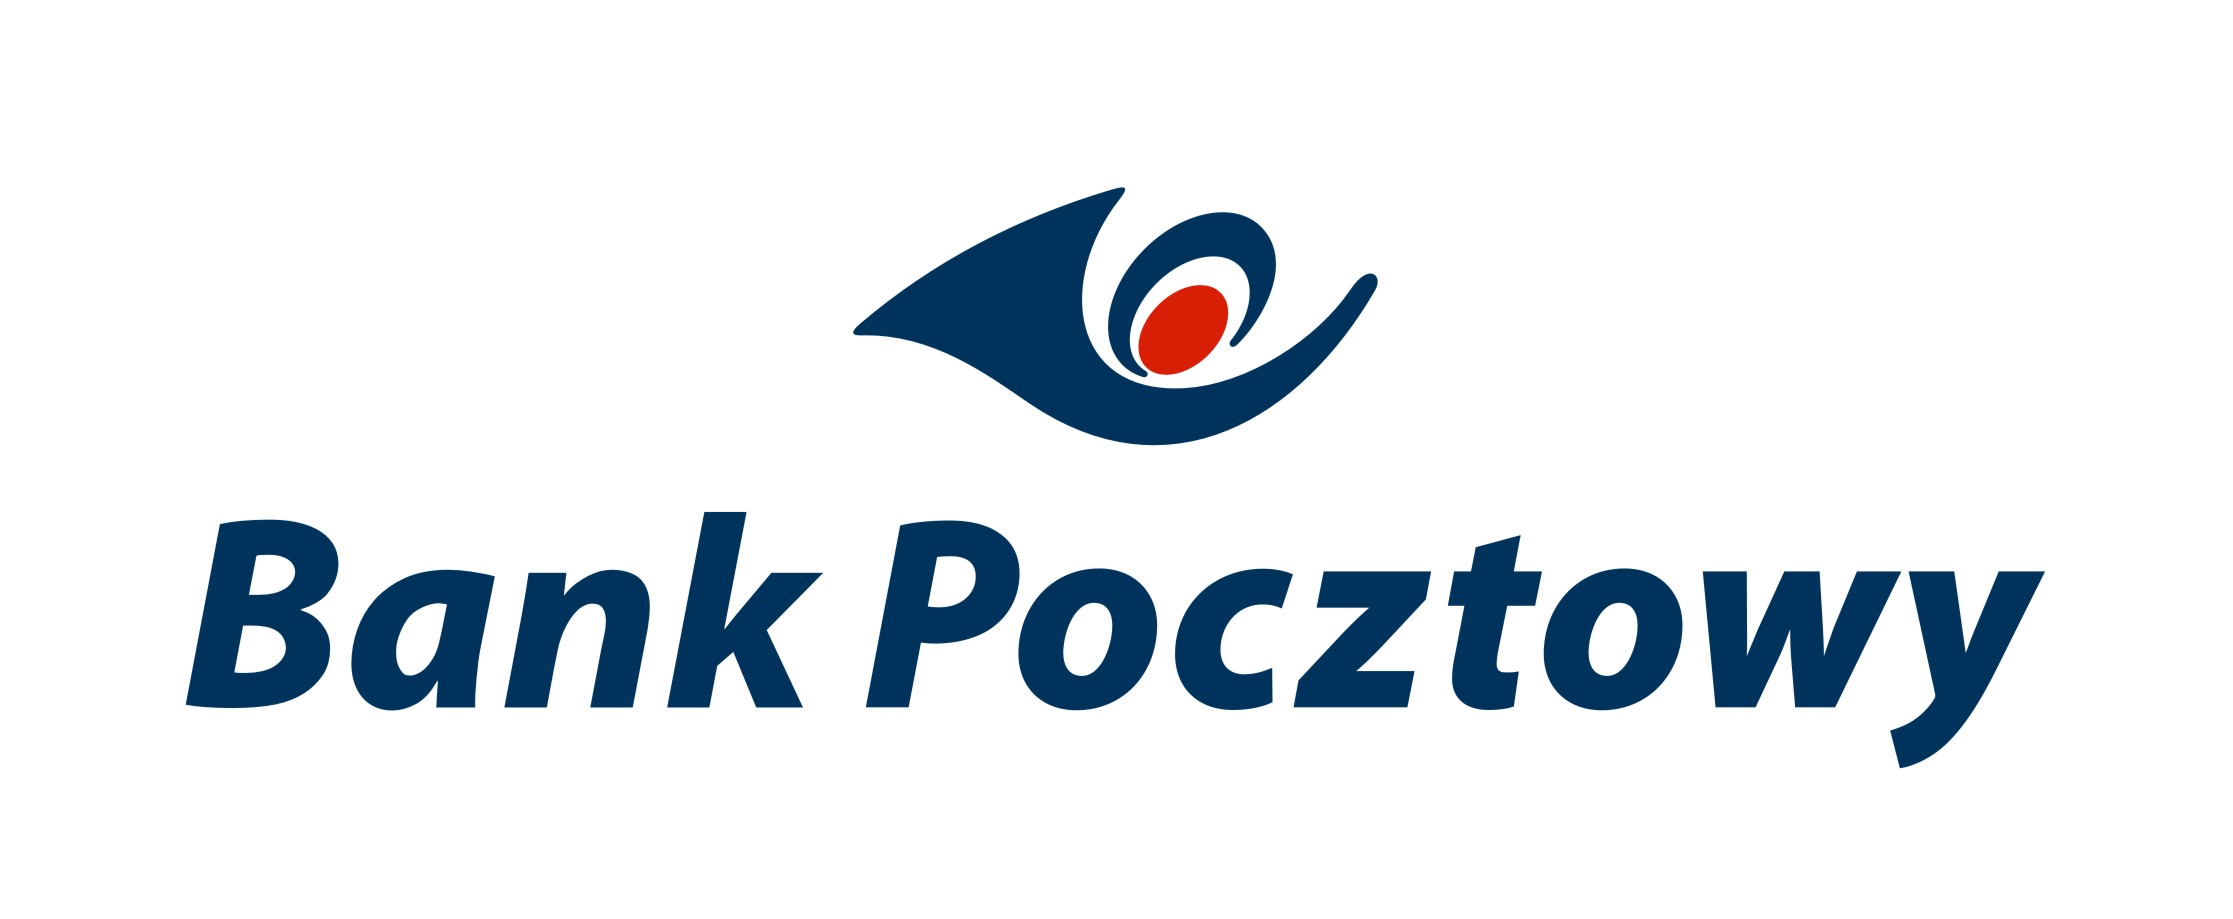 Logotypy banków w Polsce | Kontostudenta.pl